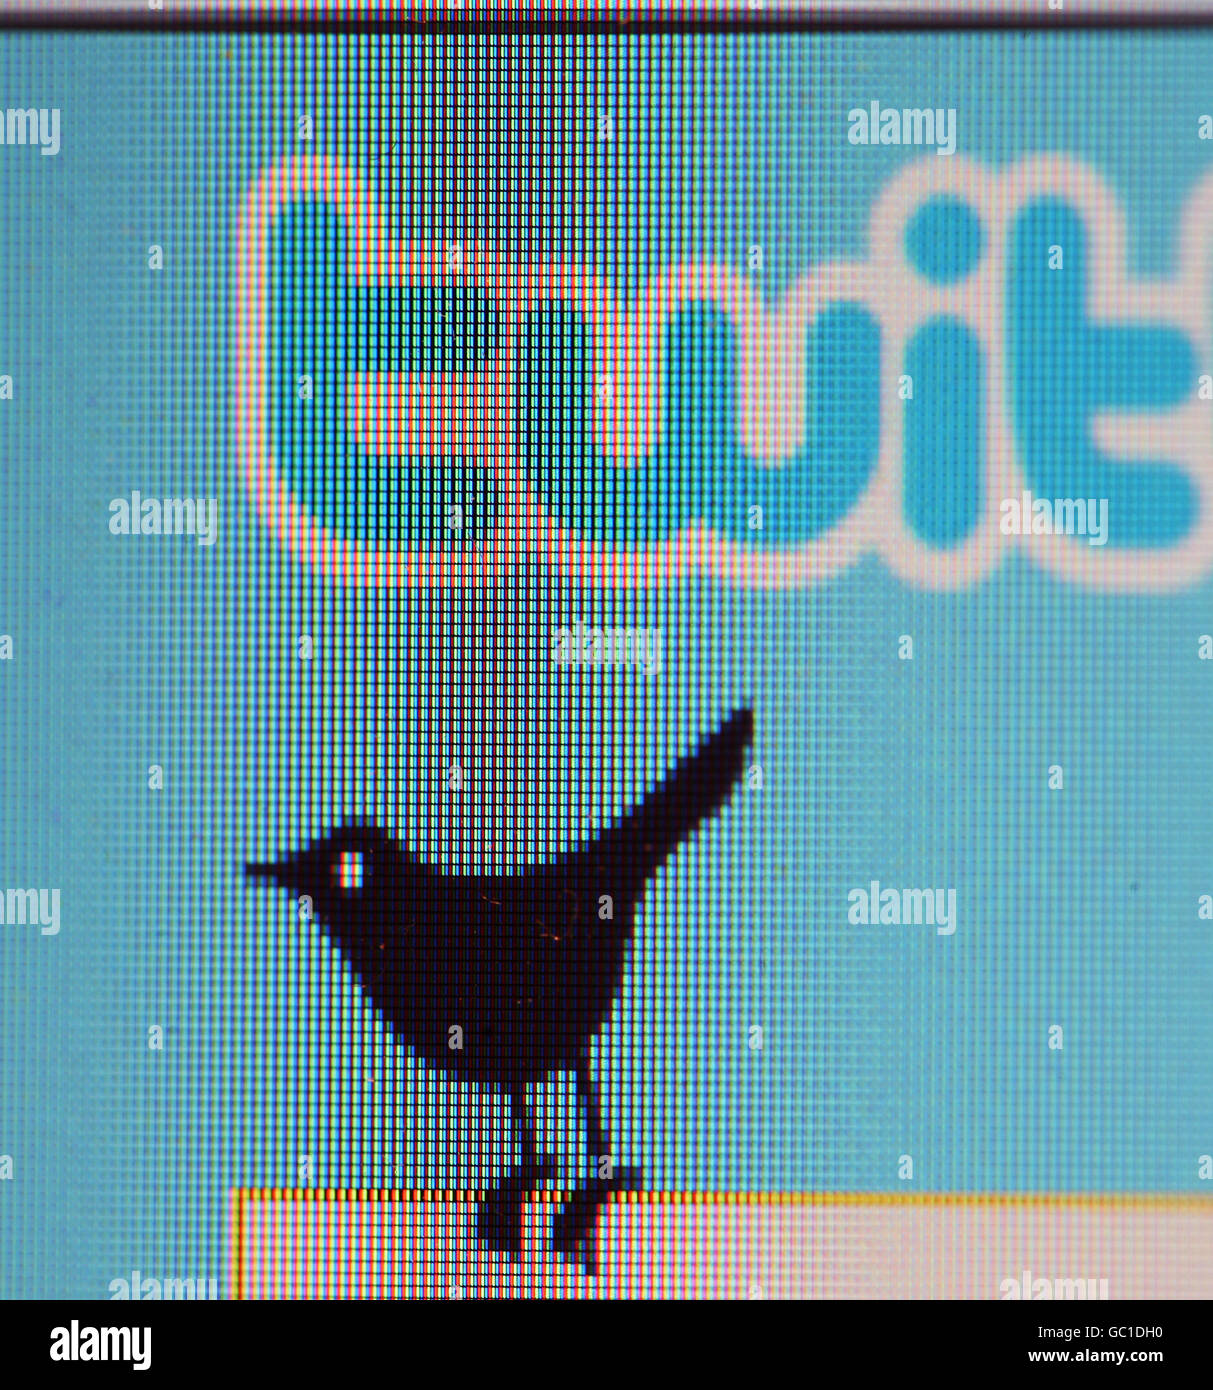 El icono de Twitter se muestra en un ordenador portátil. Foto de stock